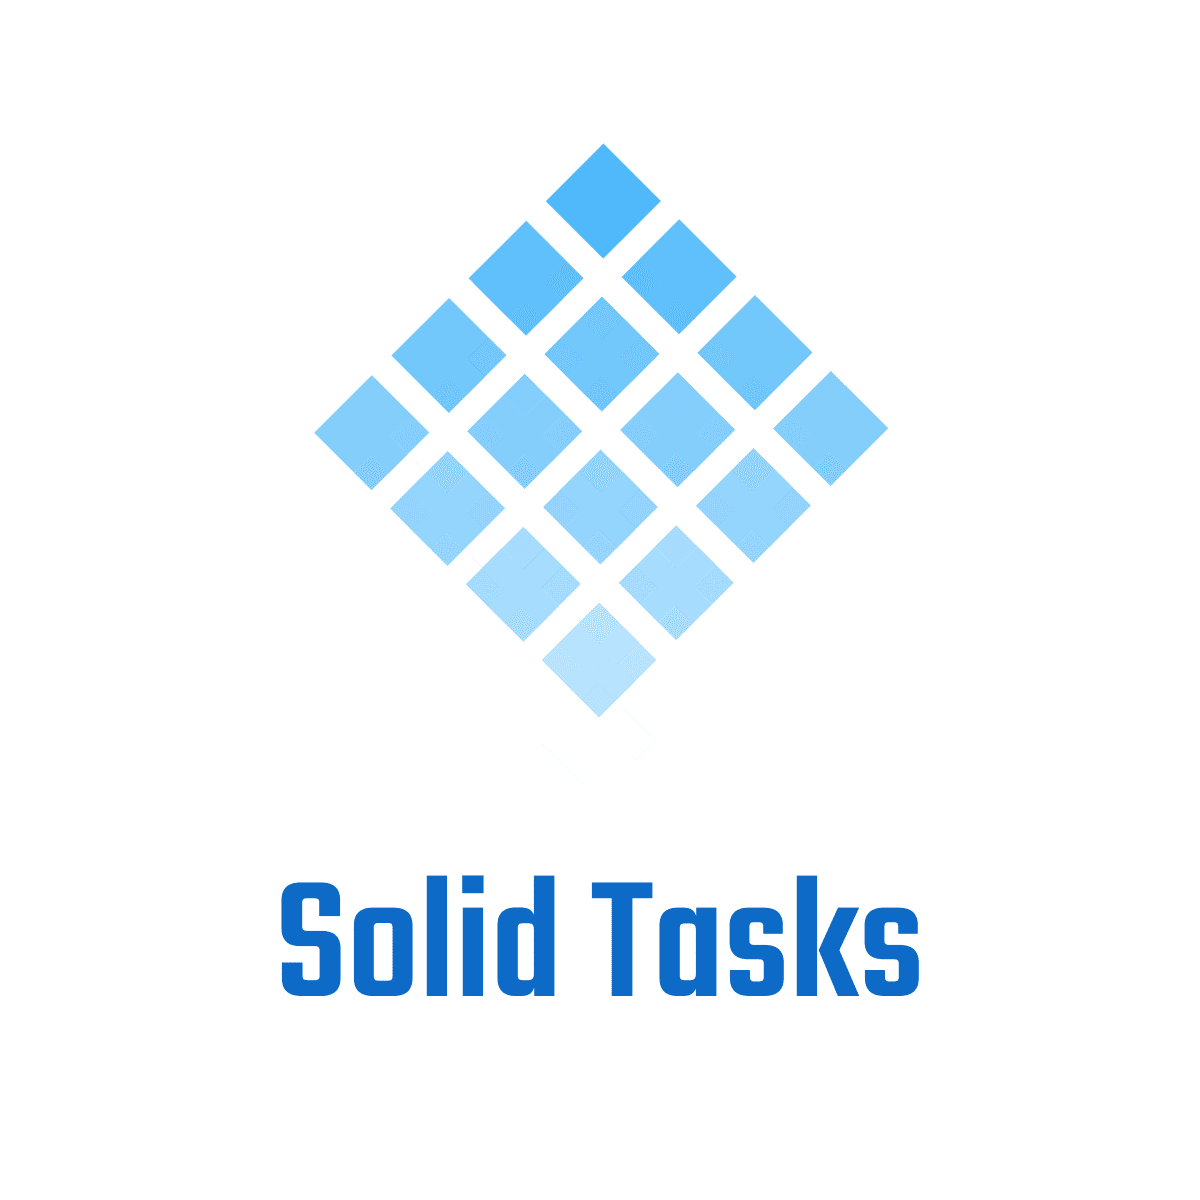 Solid Tasks logo